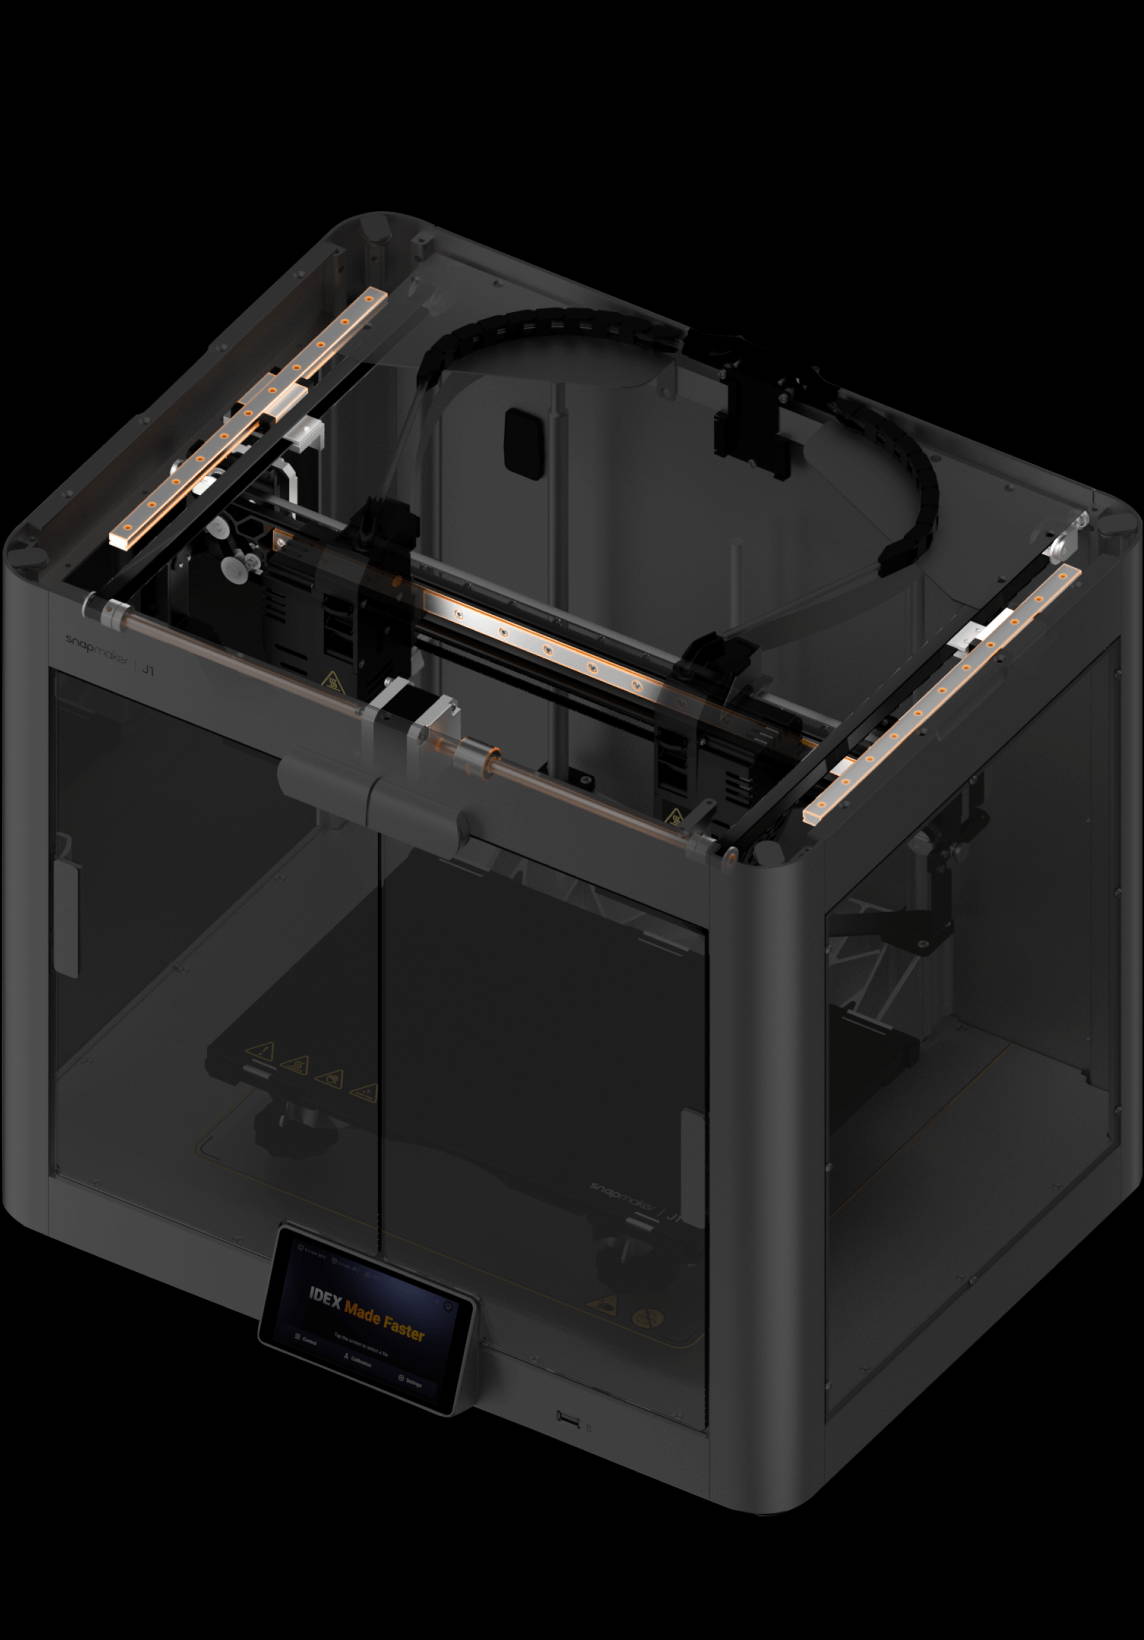 Snapmaker - Best 3D Printer